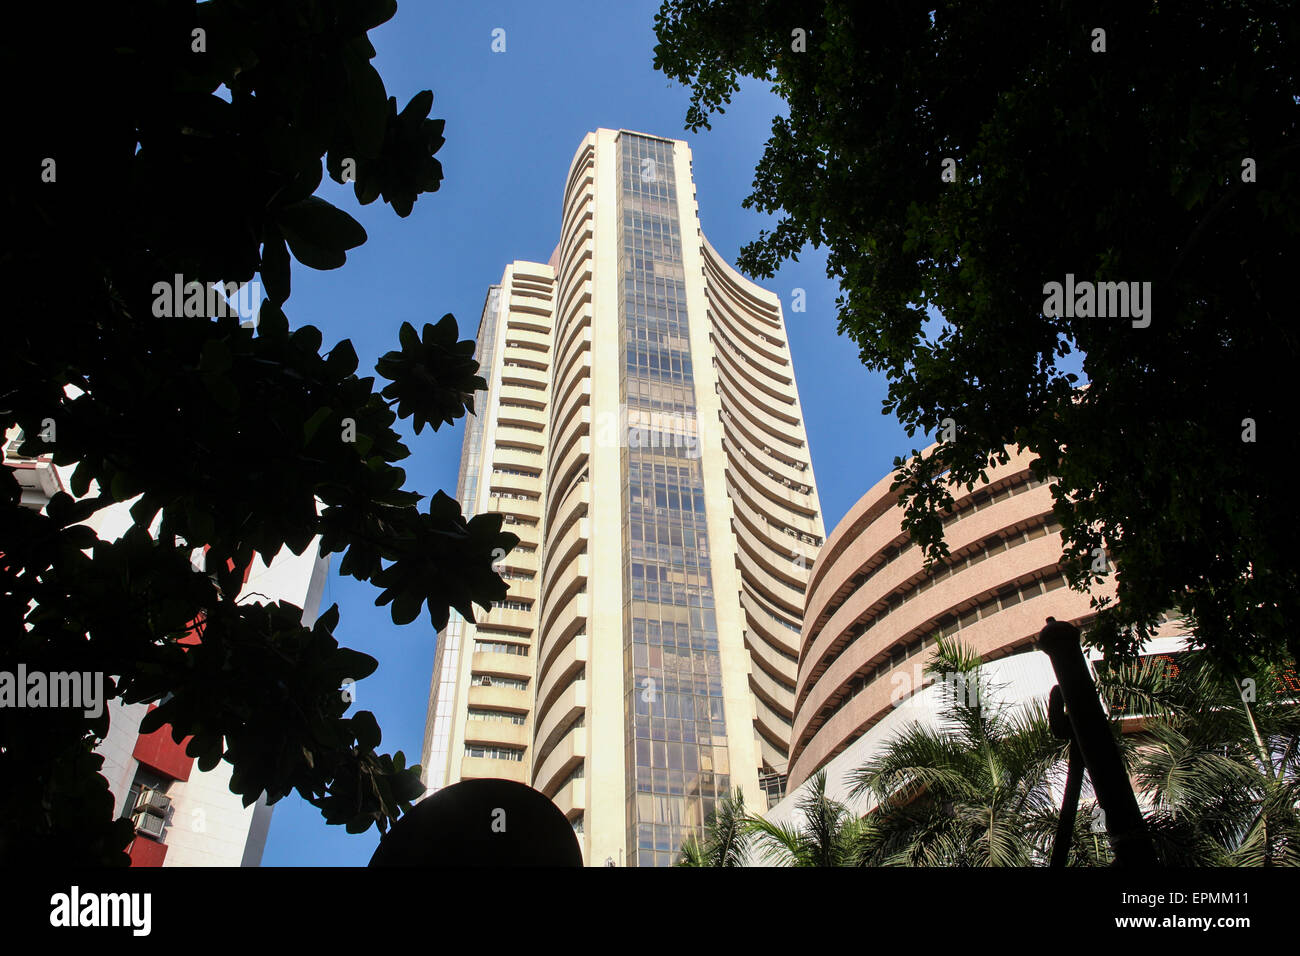 Bombay Stock Exchange (BSE) dans le coeur de la zone commerciale fort. Fort area de Mumbai/Bombay, Inde, puissance économique du Banque D'Images